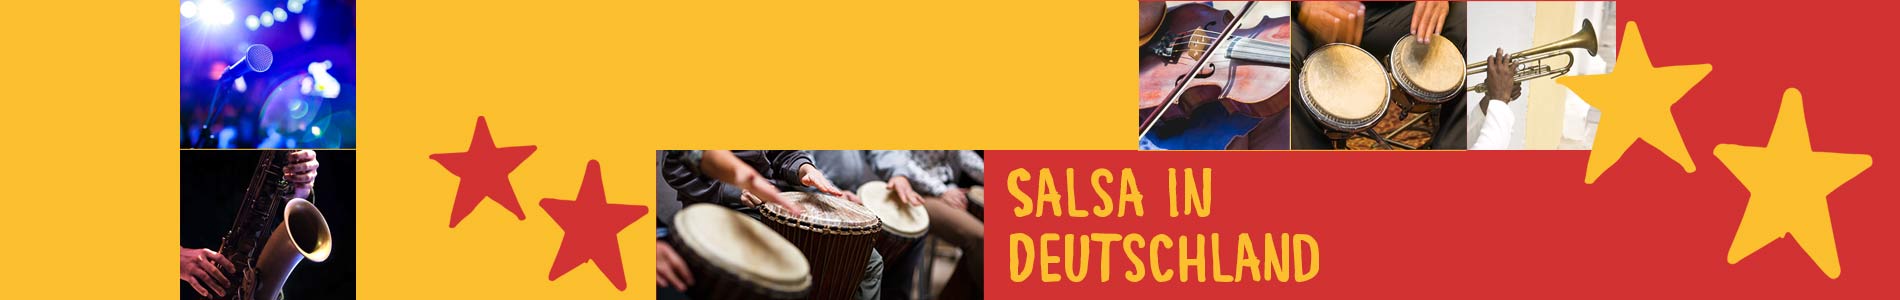 Salsa in Bornheim – Salsa lernen und tanzen, Tanzkurse, Partys, Veranstaltungen